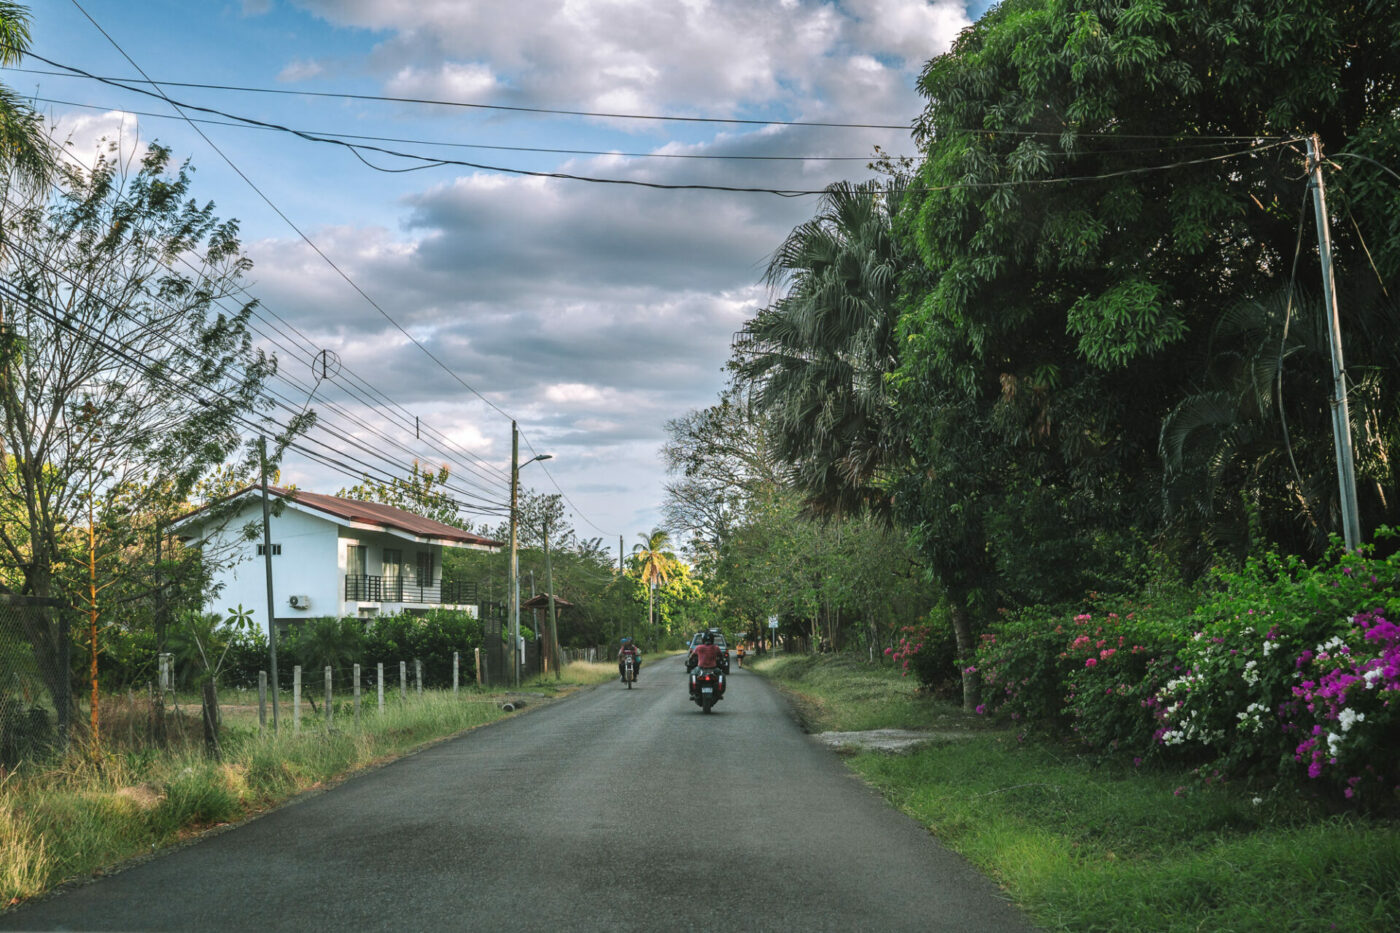 Rural road in Guanacaste, Costa Rica